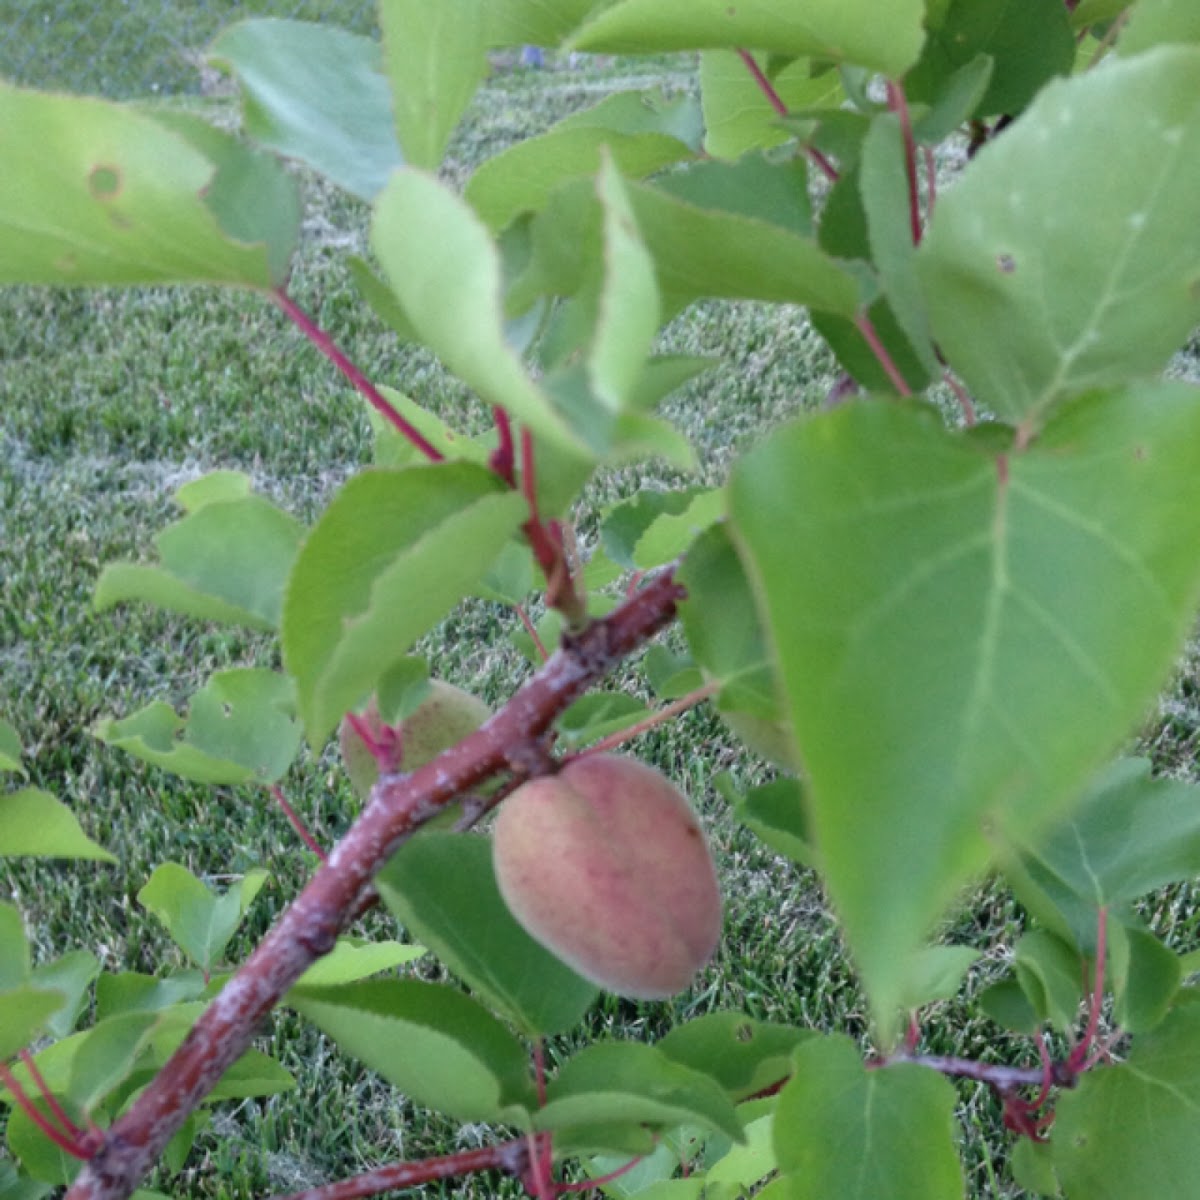 Apricot tree dwarf